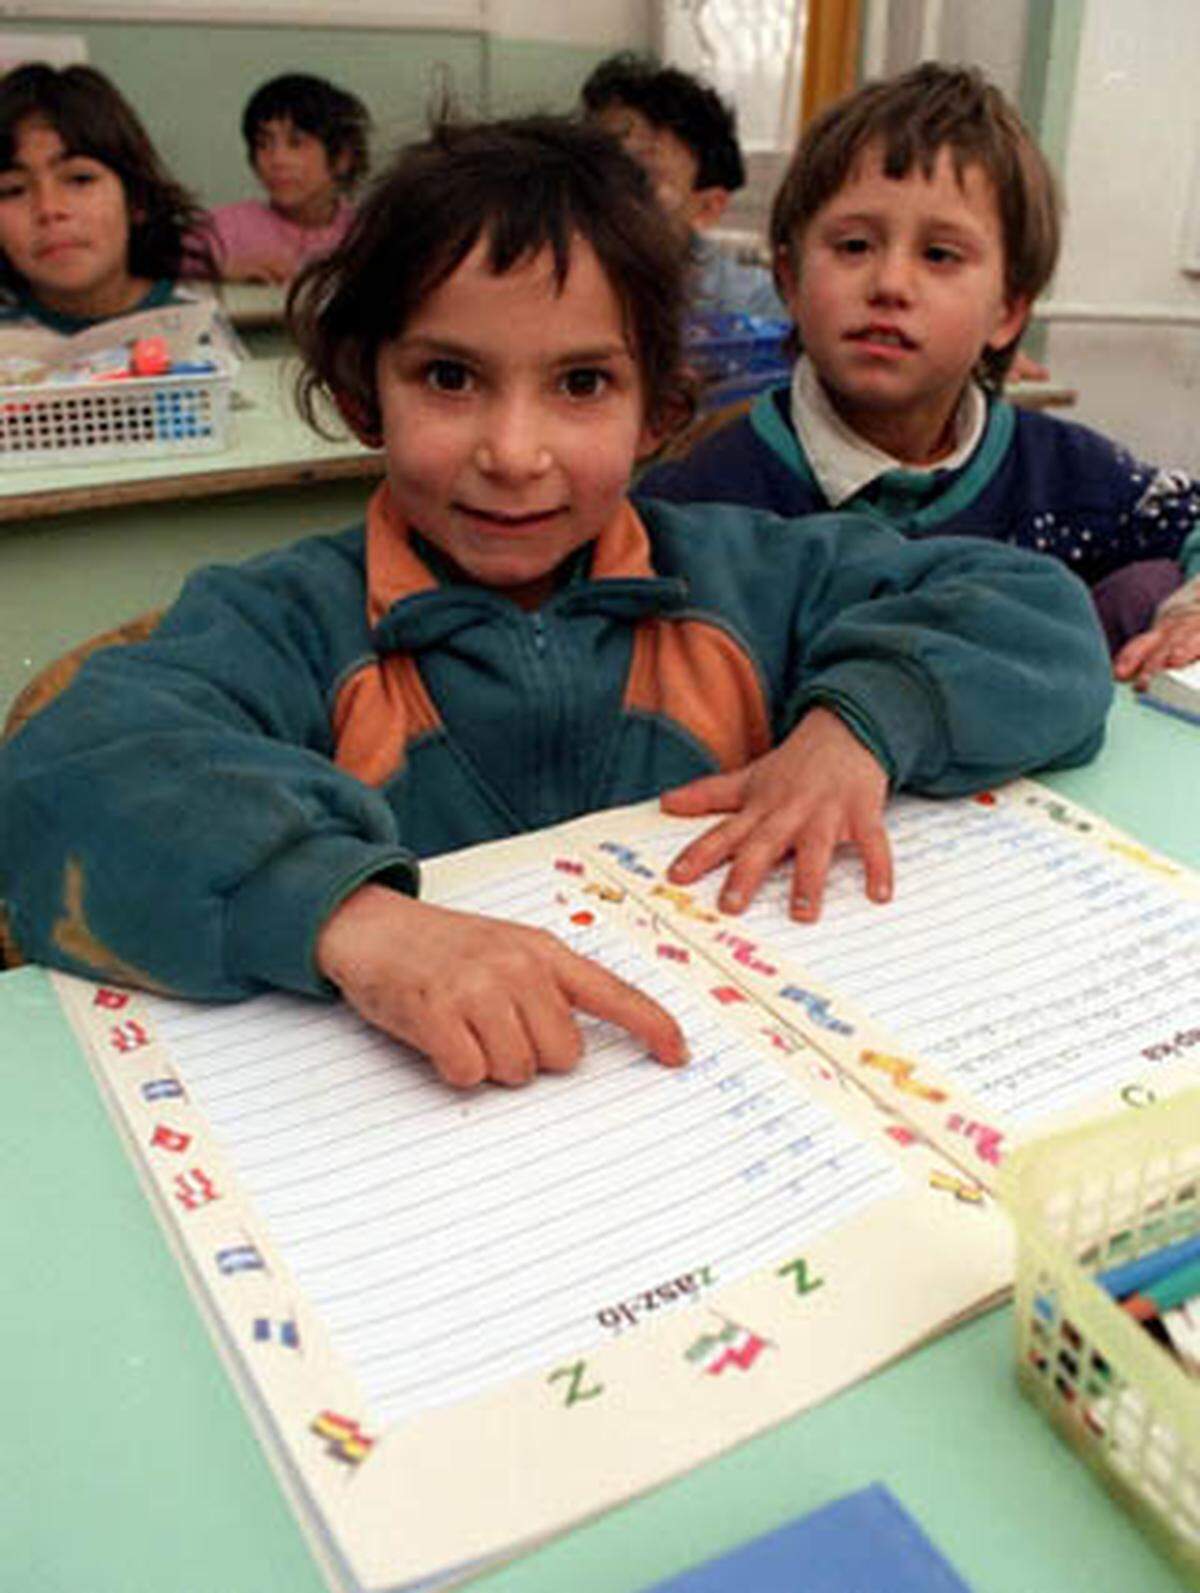 In den vergangenen Jahren hat sich die Lage der ethnischen Minderheit in der EU verschlechtert. Vor allem die Schul- und Weiterbildung müsste dringend mehr gefördert werden. Der Anteil von Schulabbrechern ist bei Roma Kindern besonders groß, oftmals ist dies auf soziale Ausgrenzung zurückzuführen.